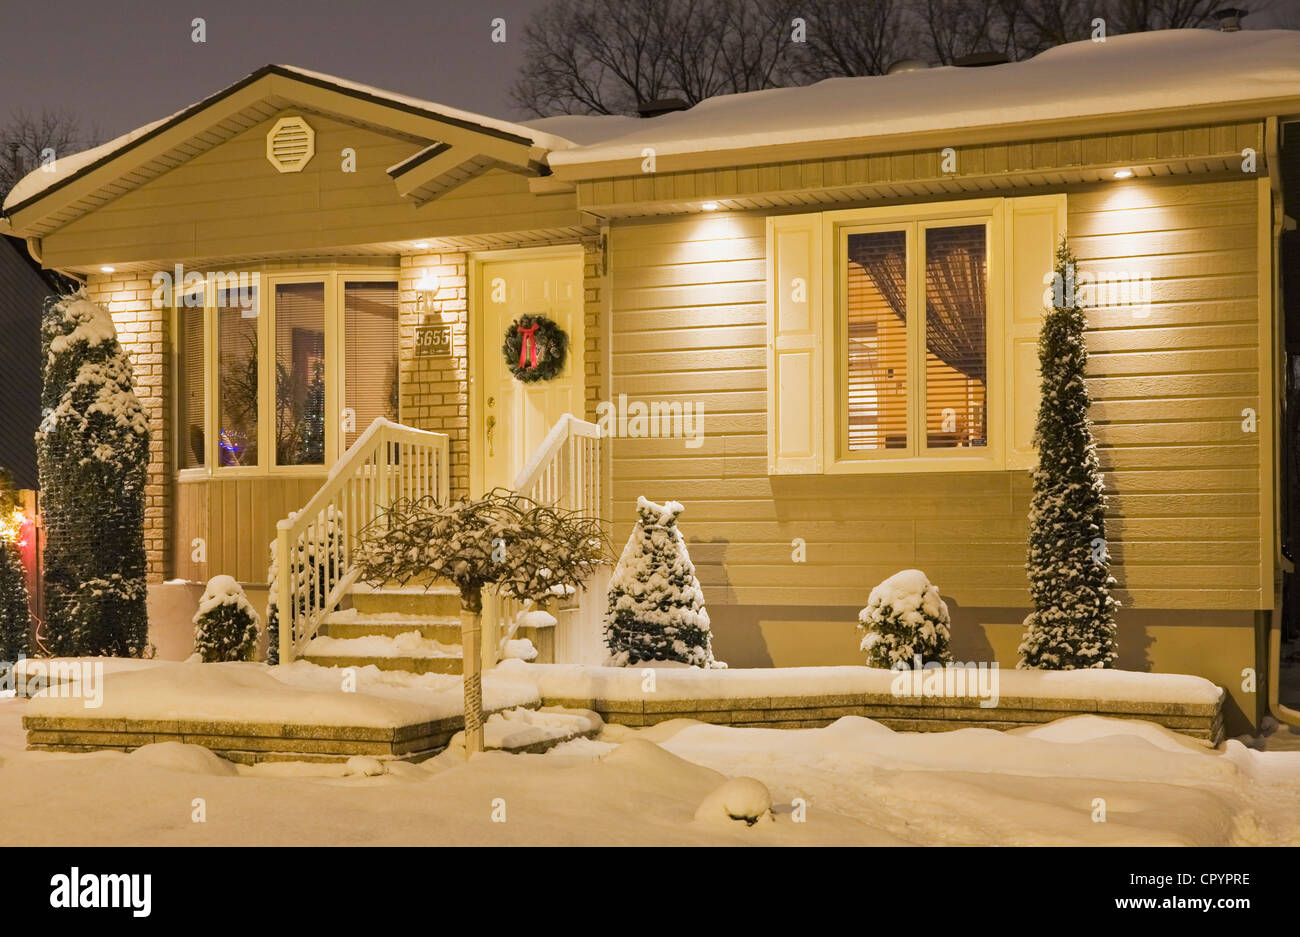 Maison de style bungalow allumé en hiver au crépuscule avec des décorations de Noël, Québec, Canada Banque D'Images